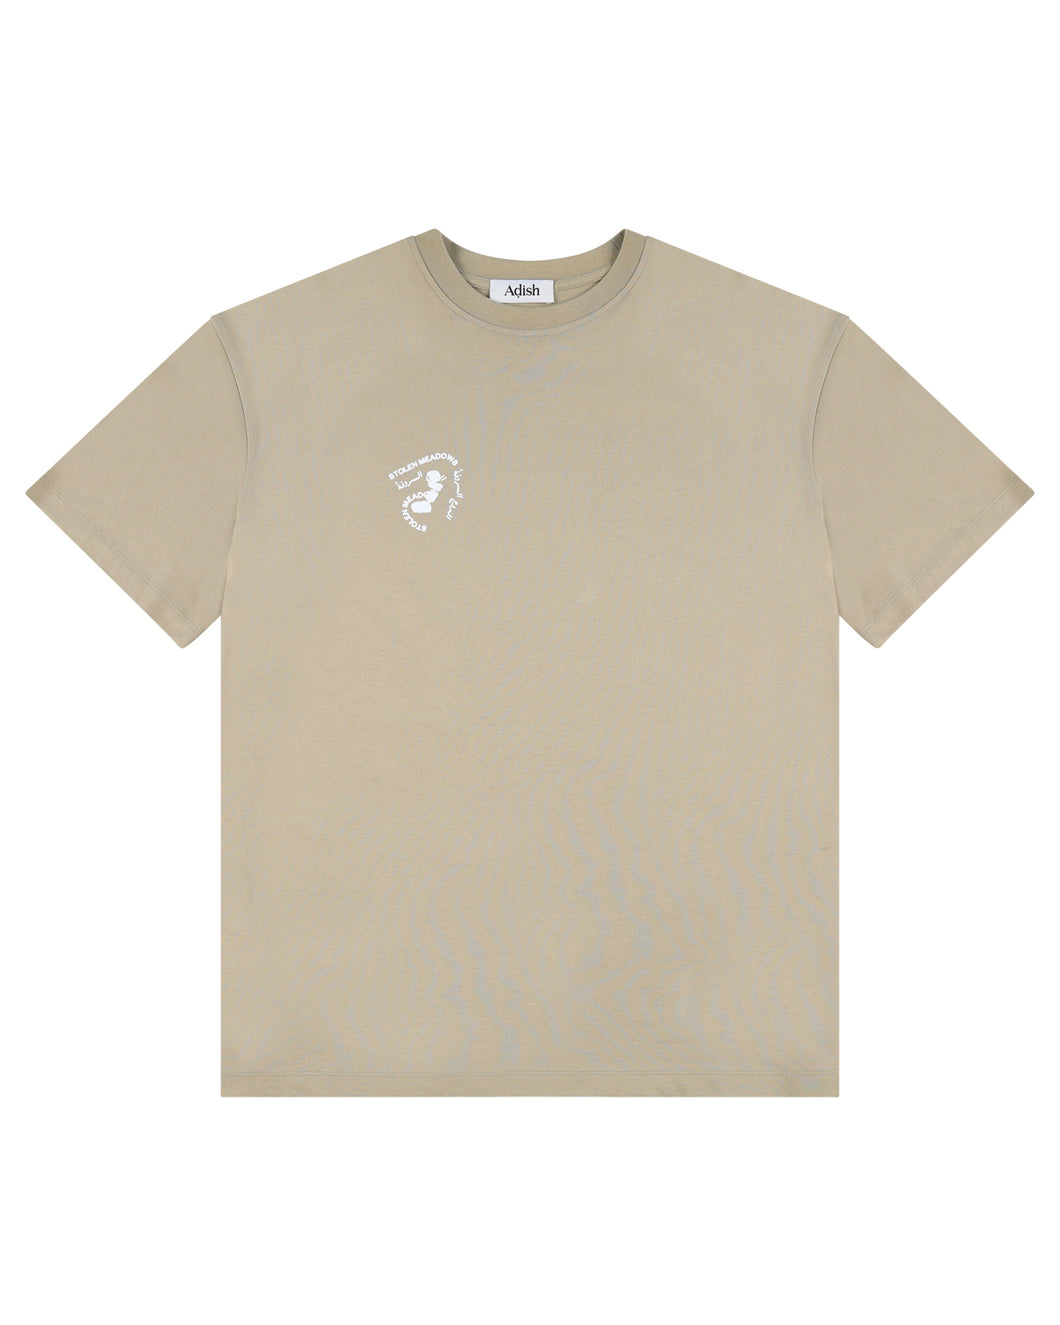 Stolen Meadows Short Sleeve T-Shirt (Beige)